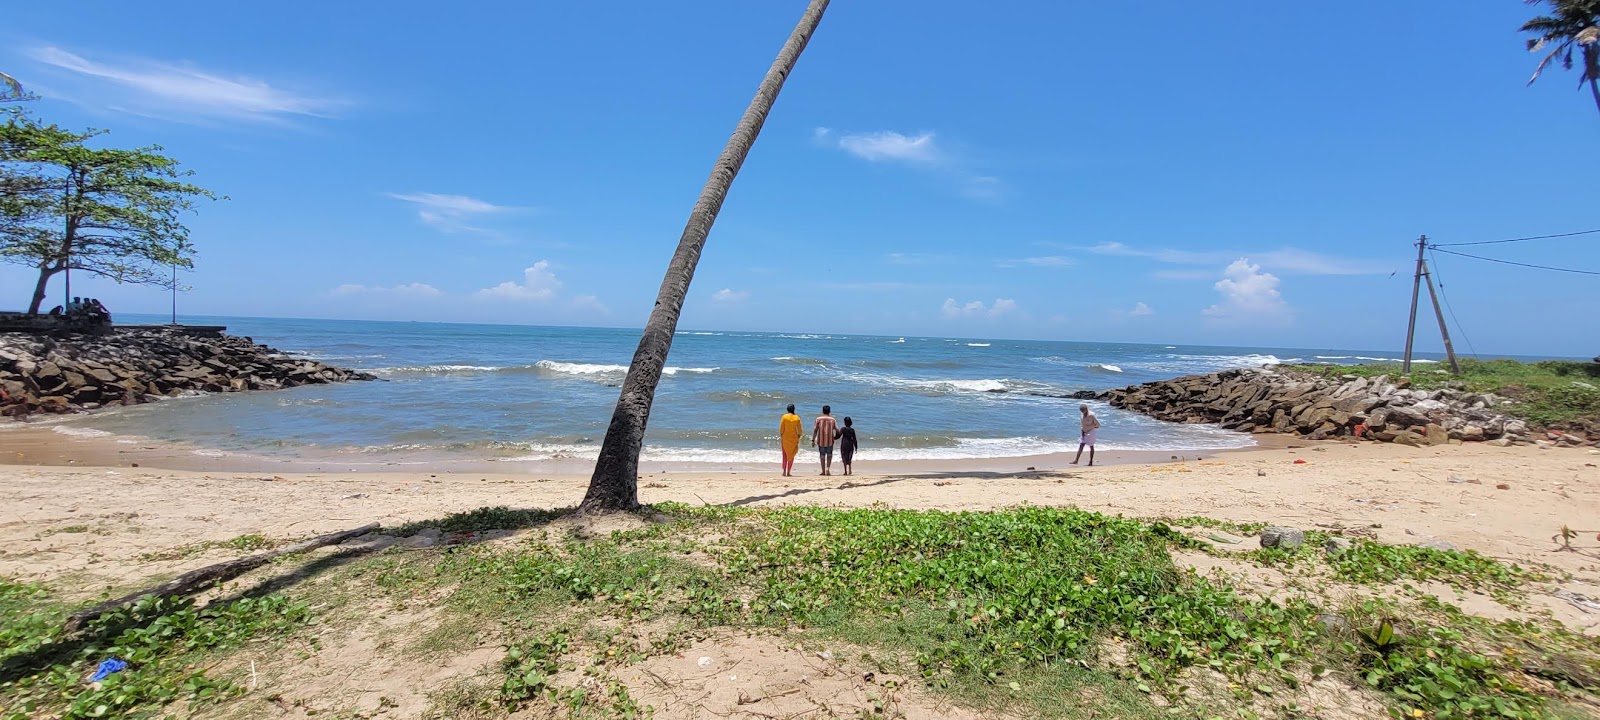 Valokuva Thirumullavaram Beachista. pinnalla turkoosi vesi:n kanssa